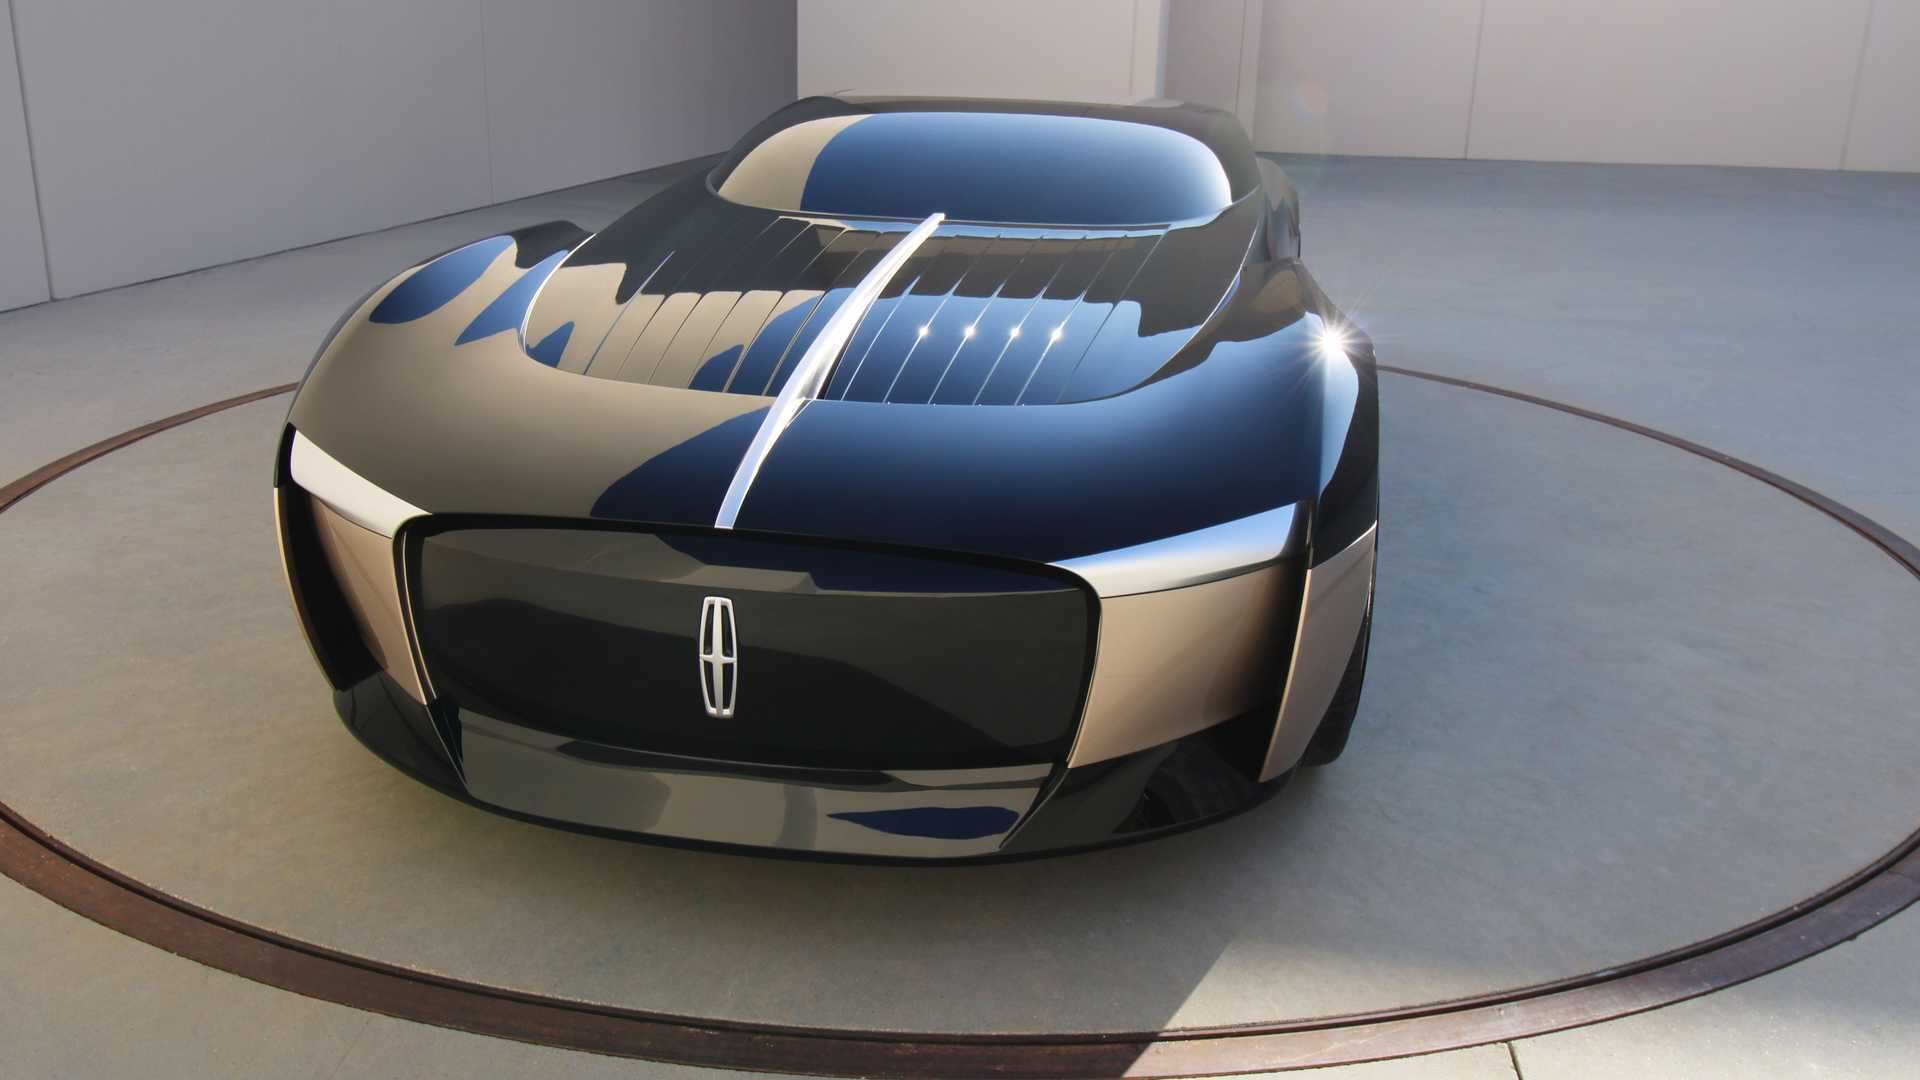 نشان لینکلن در جلوپنجره خودروی مفهومی لینکلن انیورساری / Lincoln Anniversary Concept